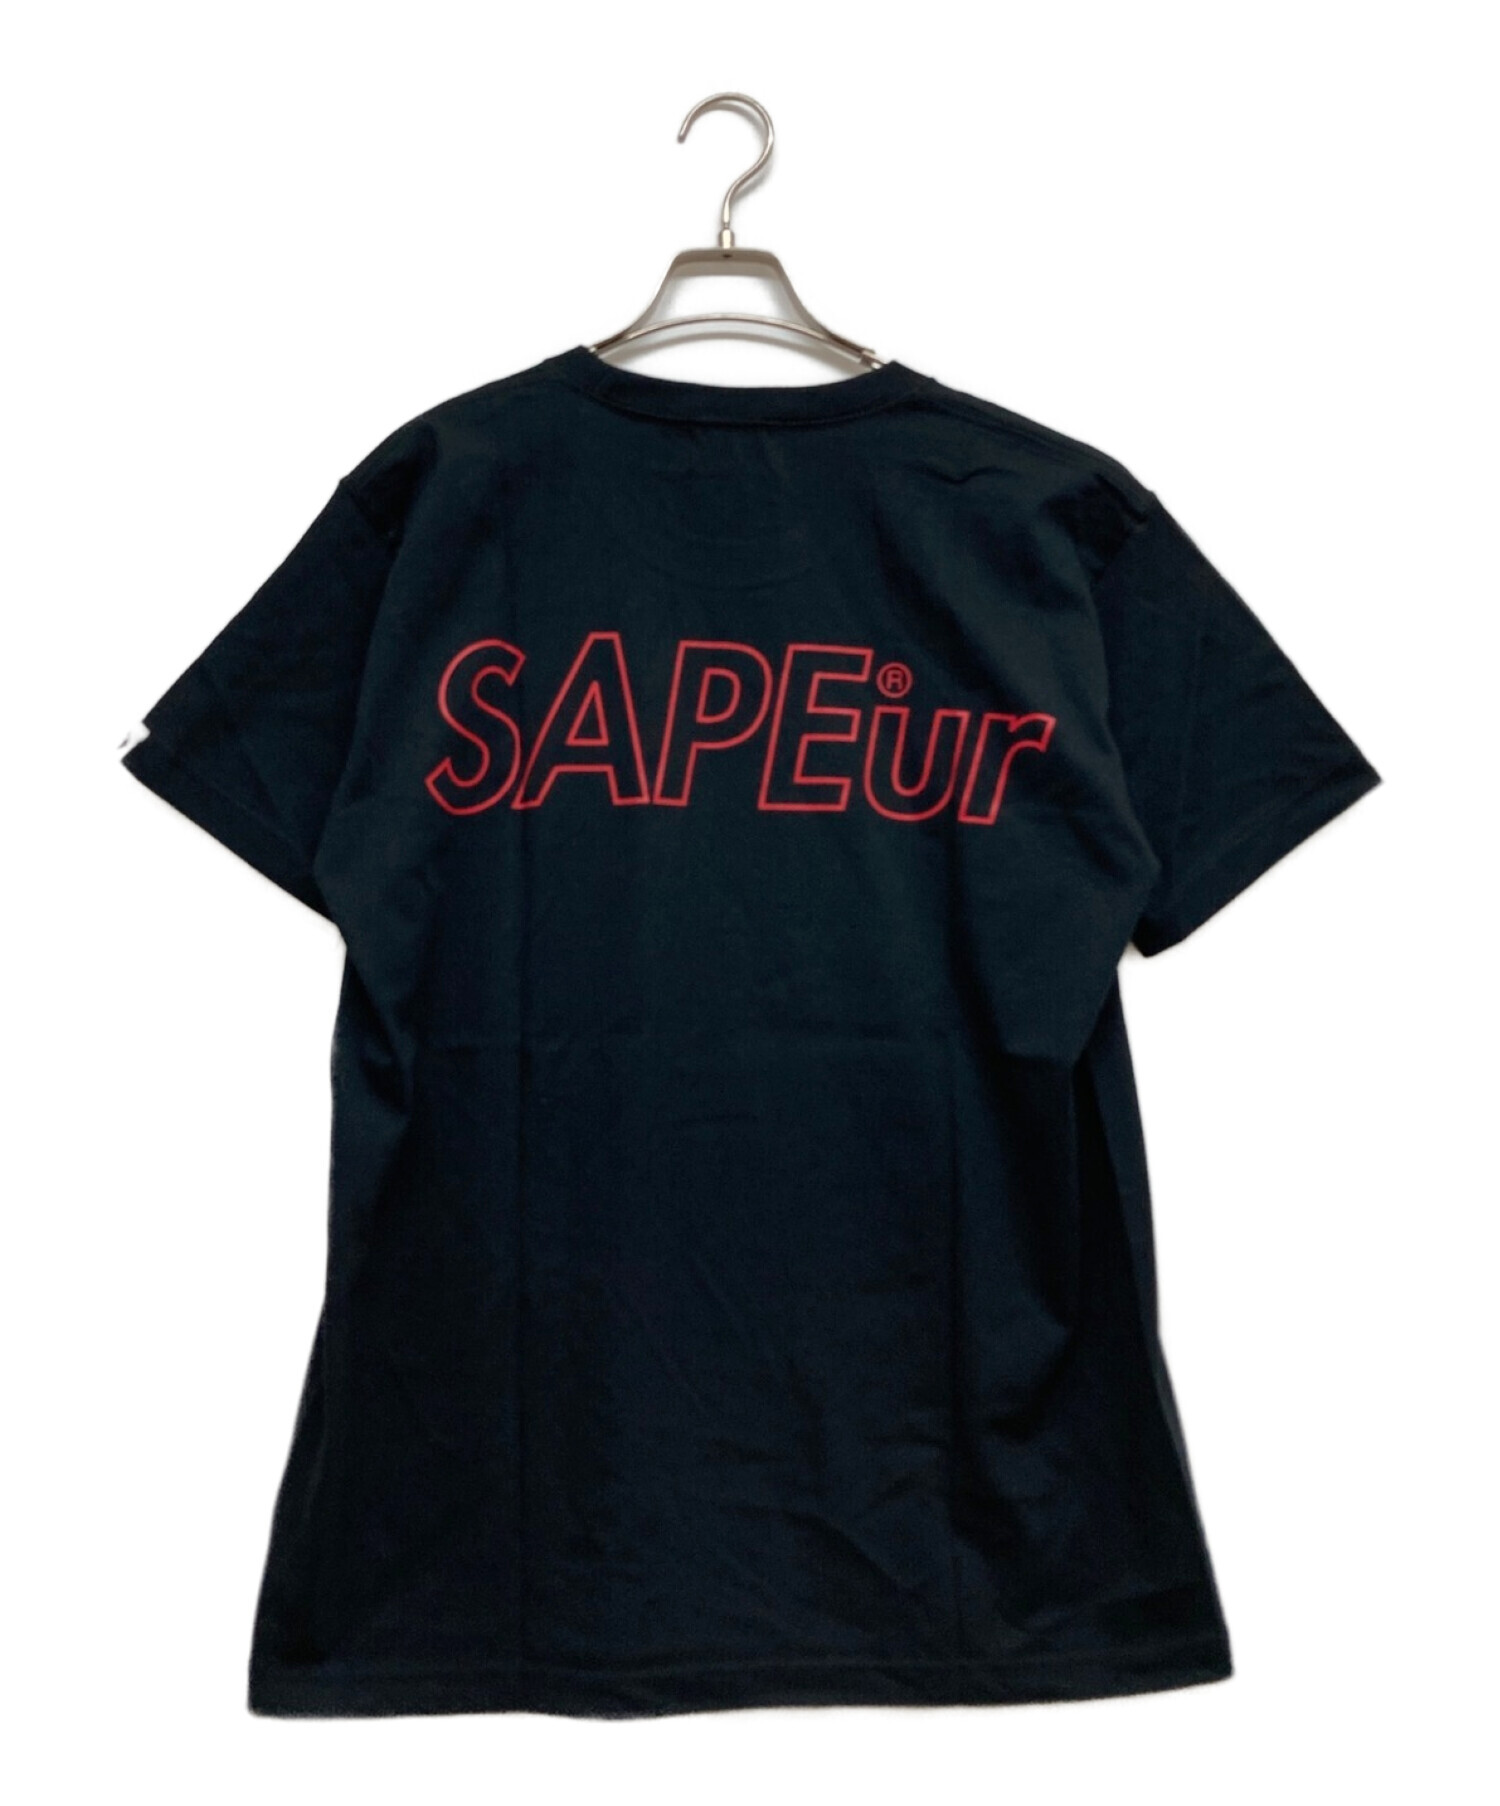 SAPEur (サプール) Tシャツ ブラック サイズ:L 未使用品